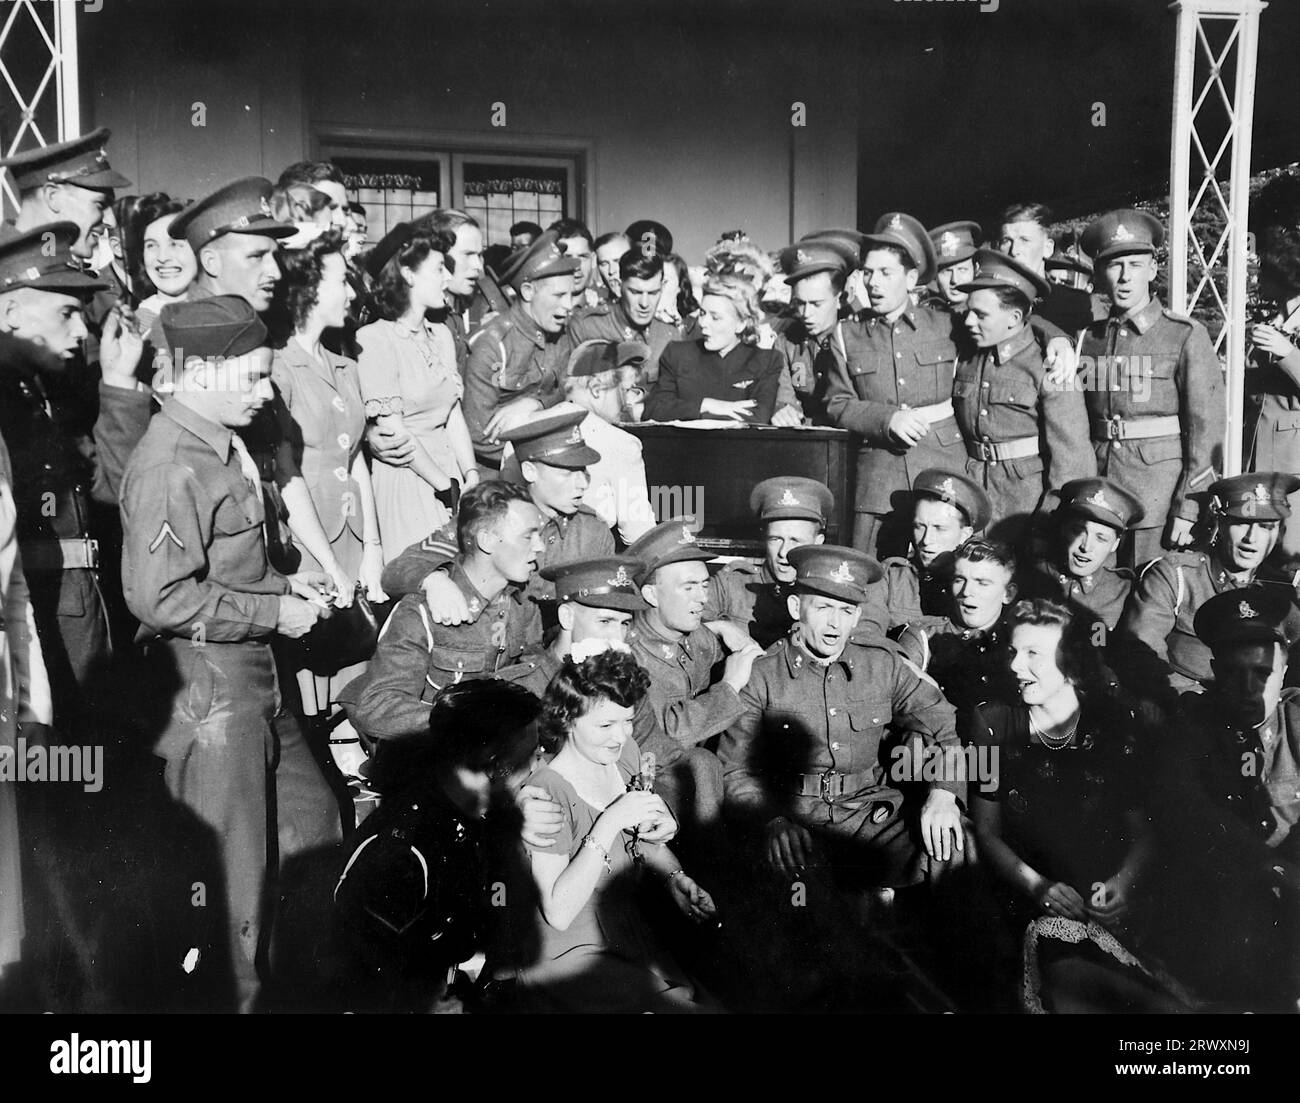 Mary Pickford unterhält die Truppen, bevor sie in ihrem Hollywood-Haus Tee serviert. Seltenes Foto: Aus einer Sammlung eines unbekannten britischen Soldaten über die No. 1 Composite Demonstration, AA Battery, Tour durch die USA, vom 11. Juli 1943. Dies ist eines von mehr als hundert Bildern in der Sammlung, die im Durchschnitt etwa 4 x 3 Zoll groß waren. Stockfoto